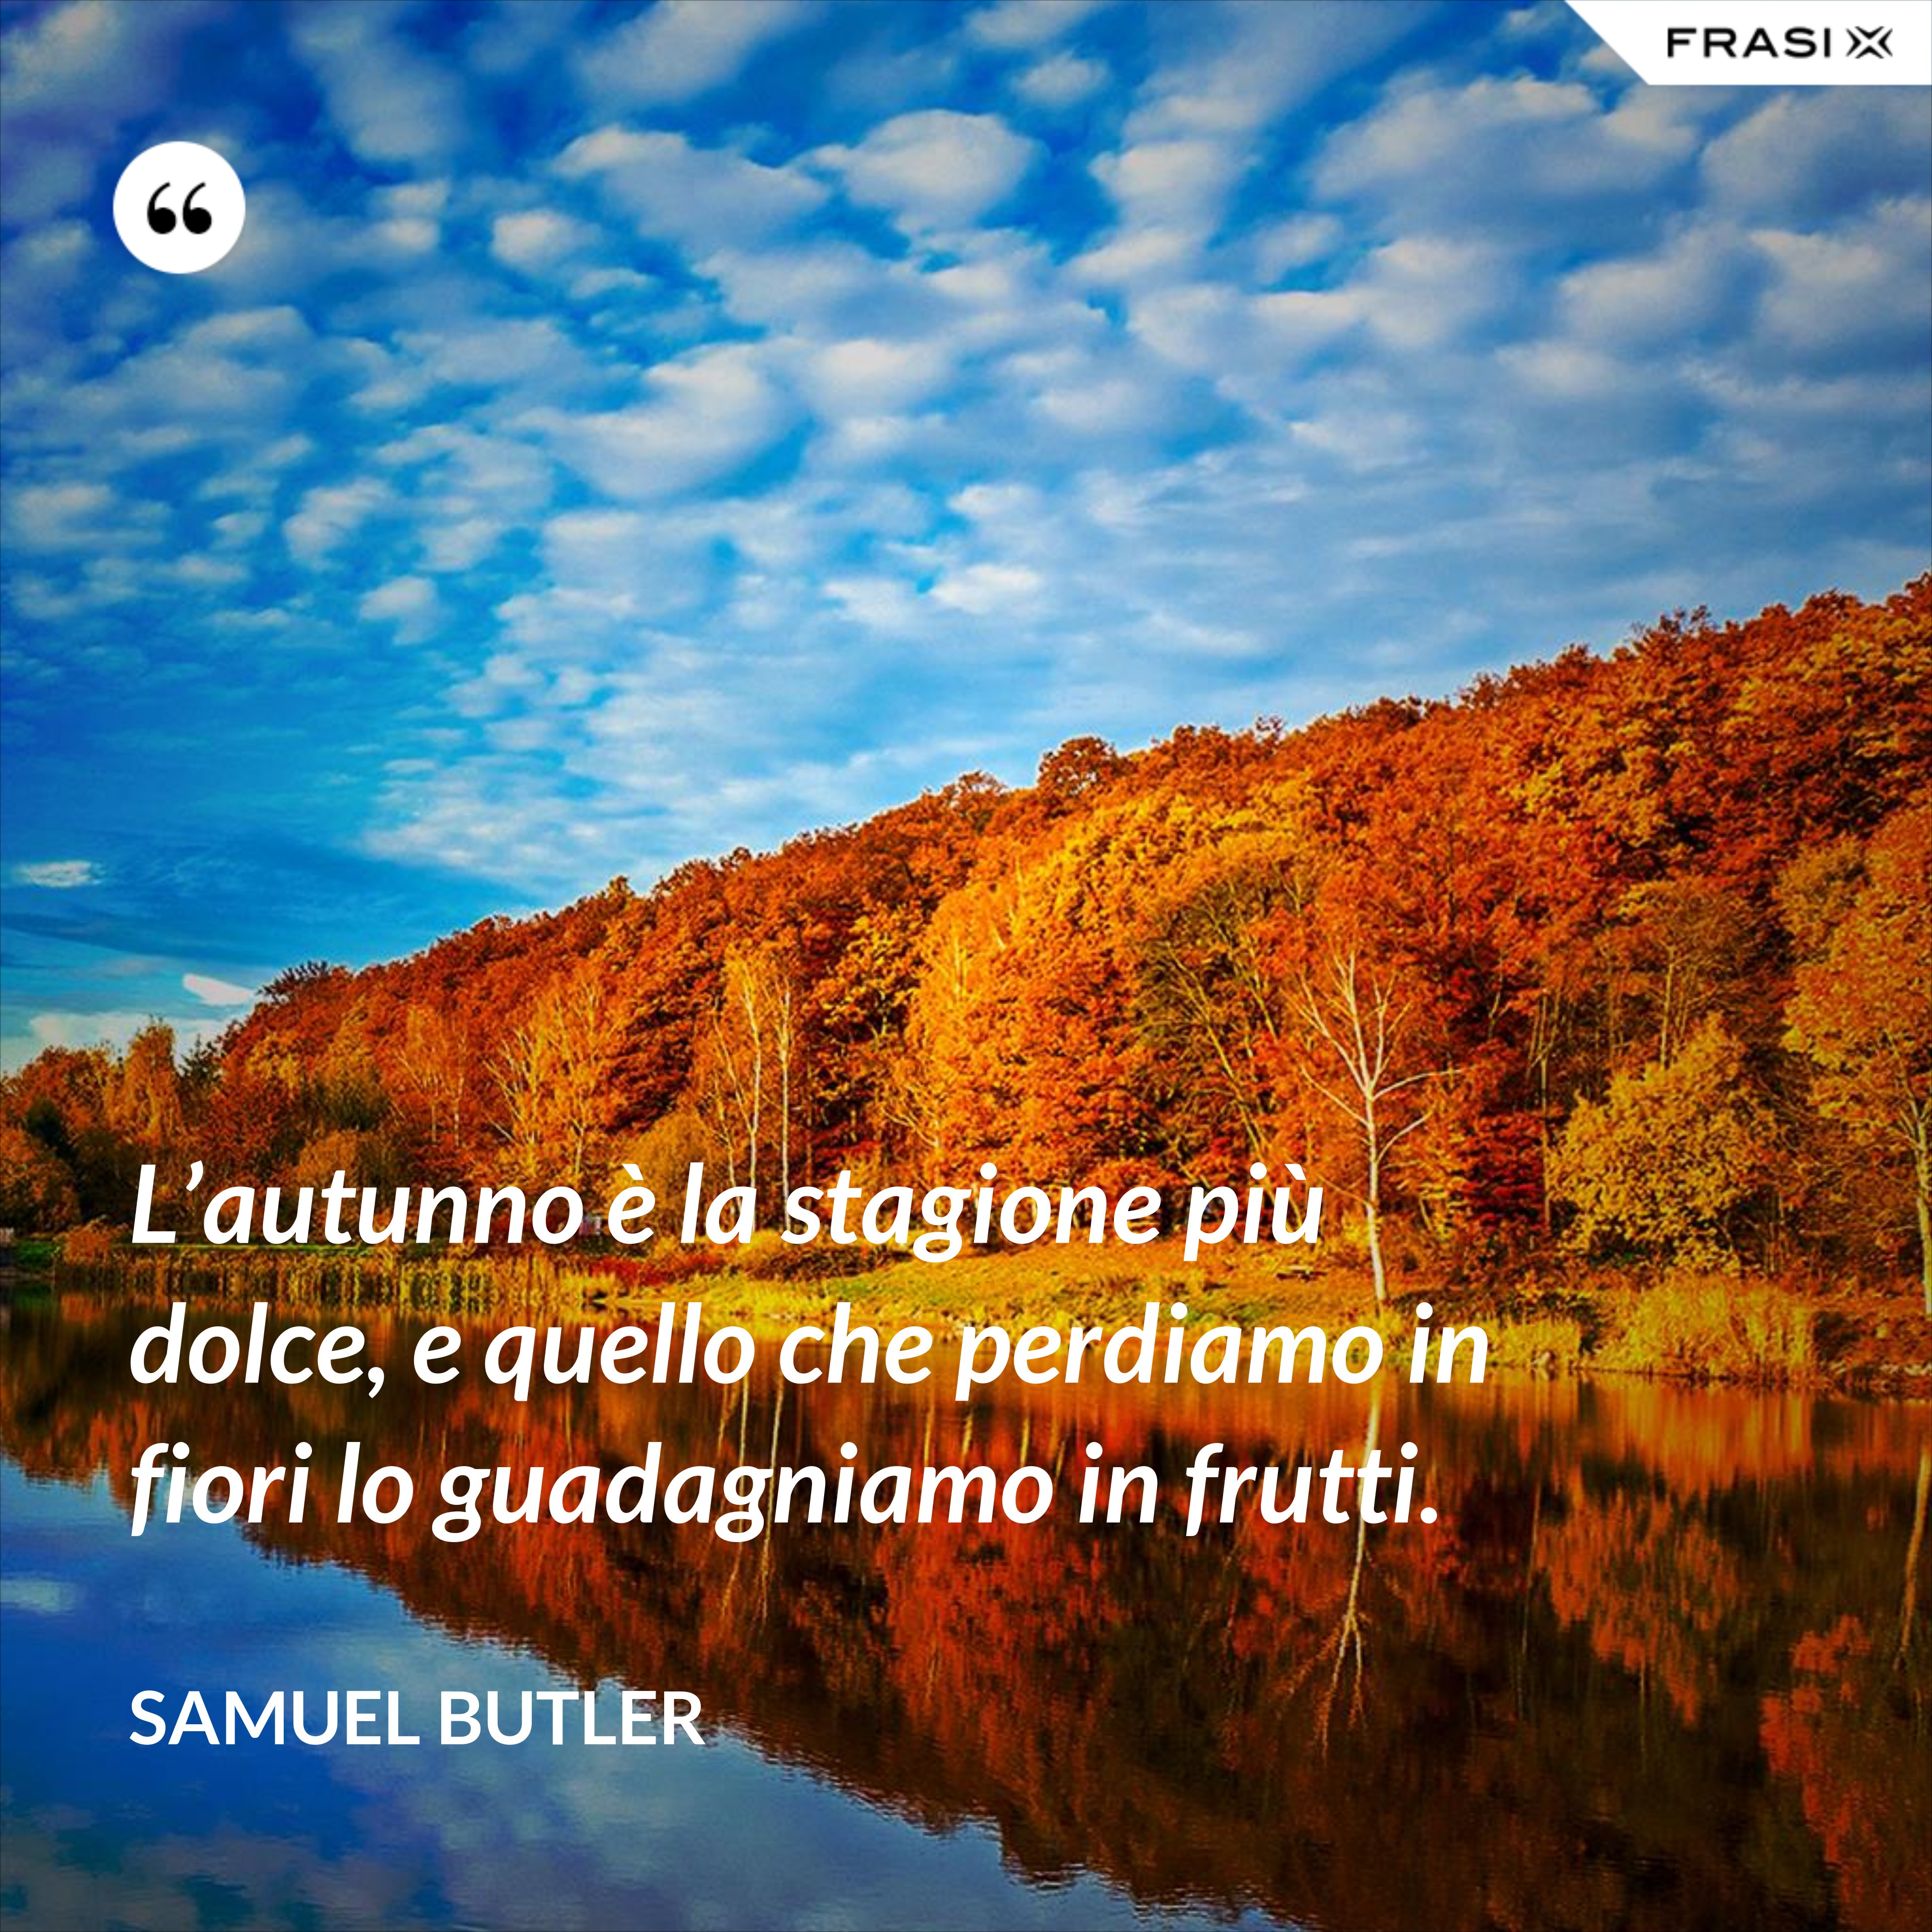 L’autunno è la stagione più dolce, e quello che perdiamo in fiori lo guadagniamo in frutti. - Samuel Butler